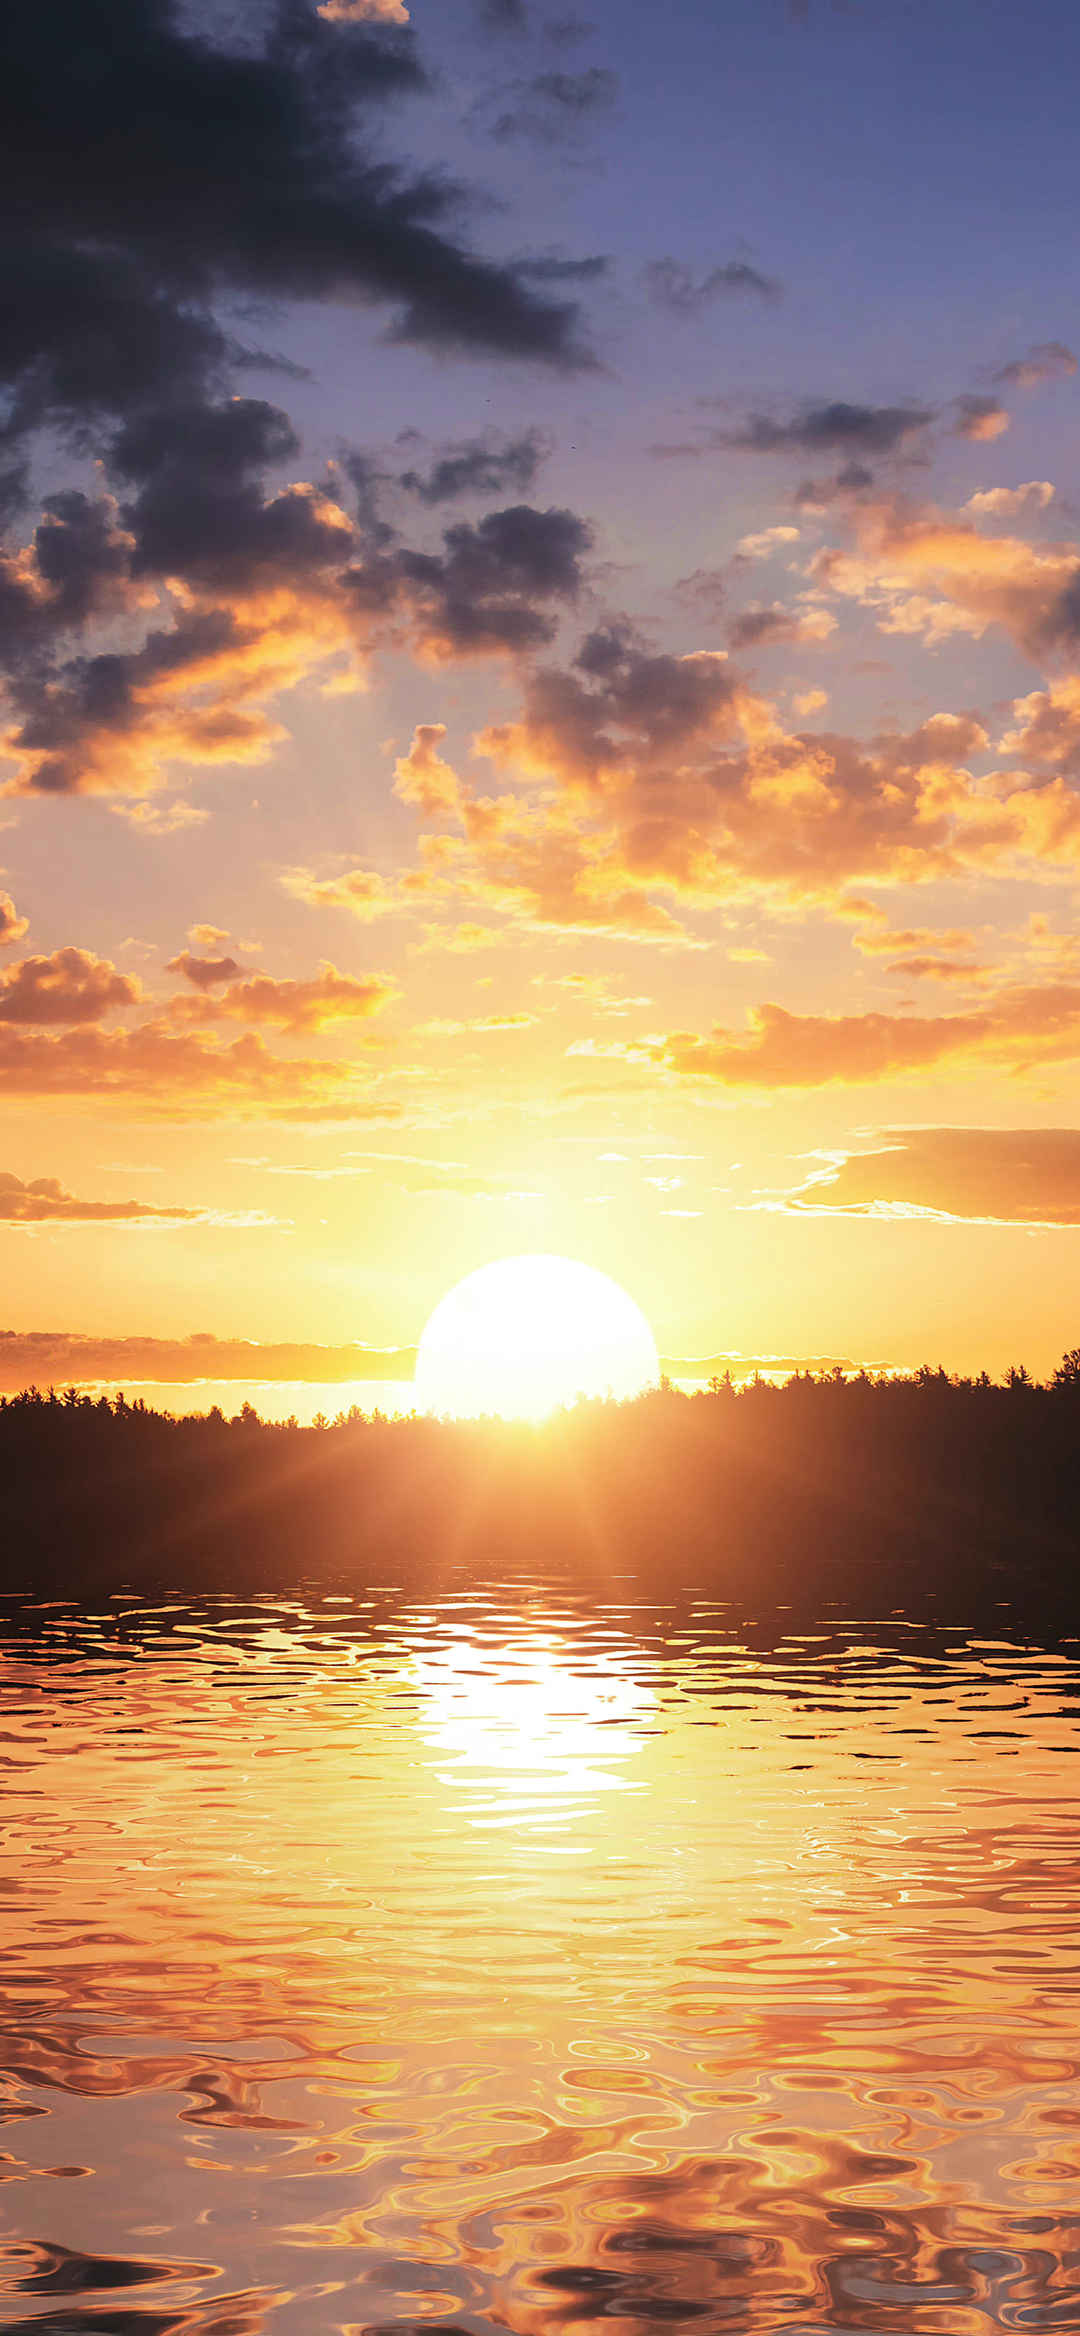 夕阳照射在树林湖泊上暖心壁纸-